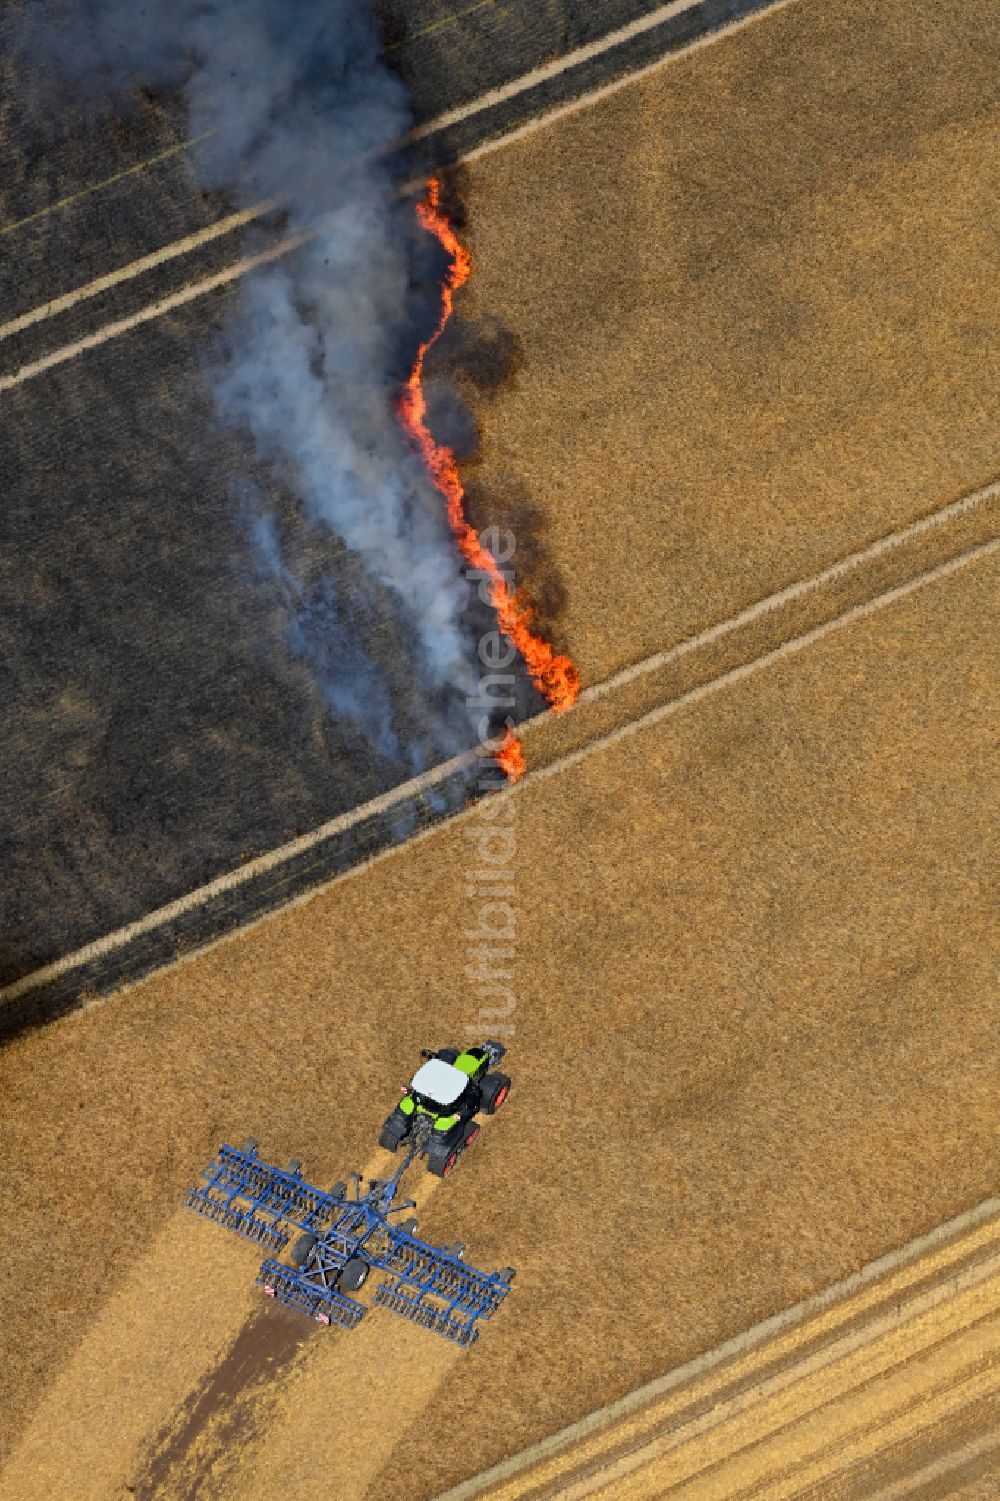 Luftbild Schwanebeck - Rauchschwaden eines Brandes in einem Getreidefeld in Schwanebeck im Bundesland Brandenburg, Deutschland